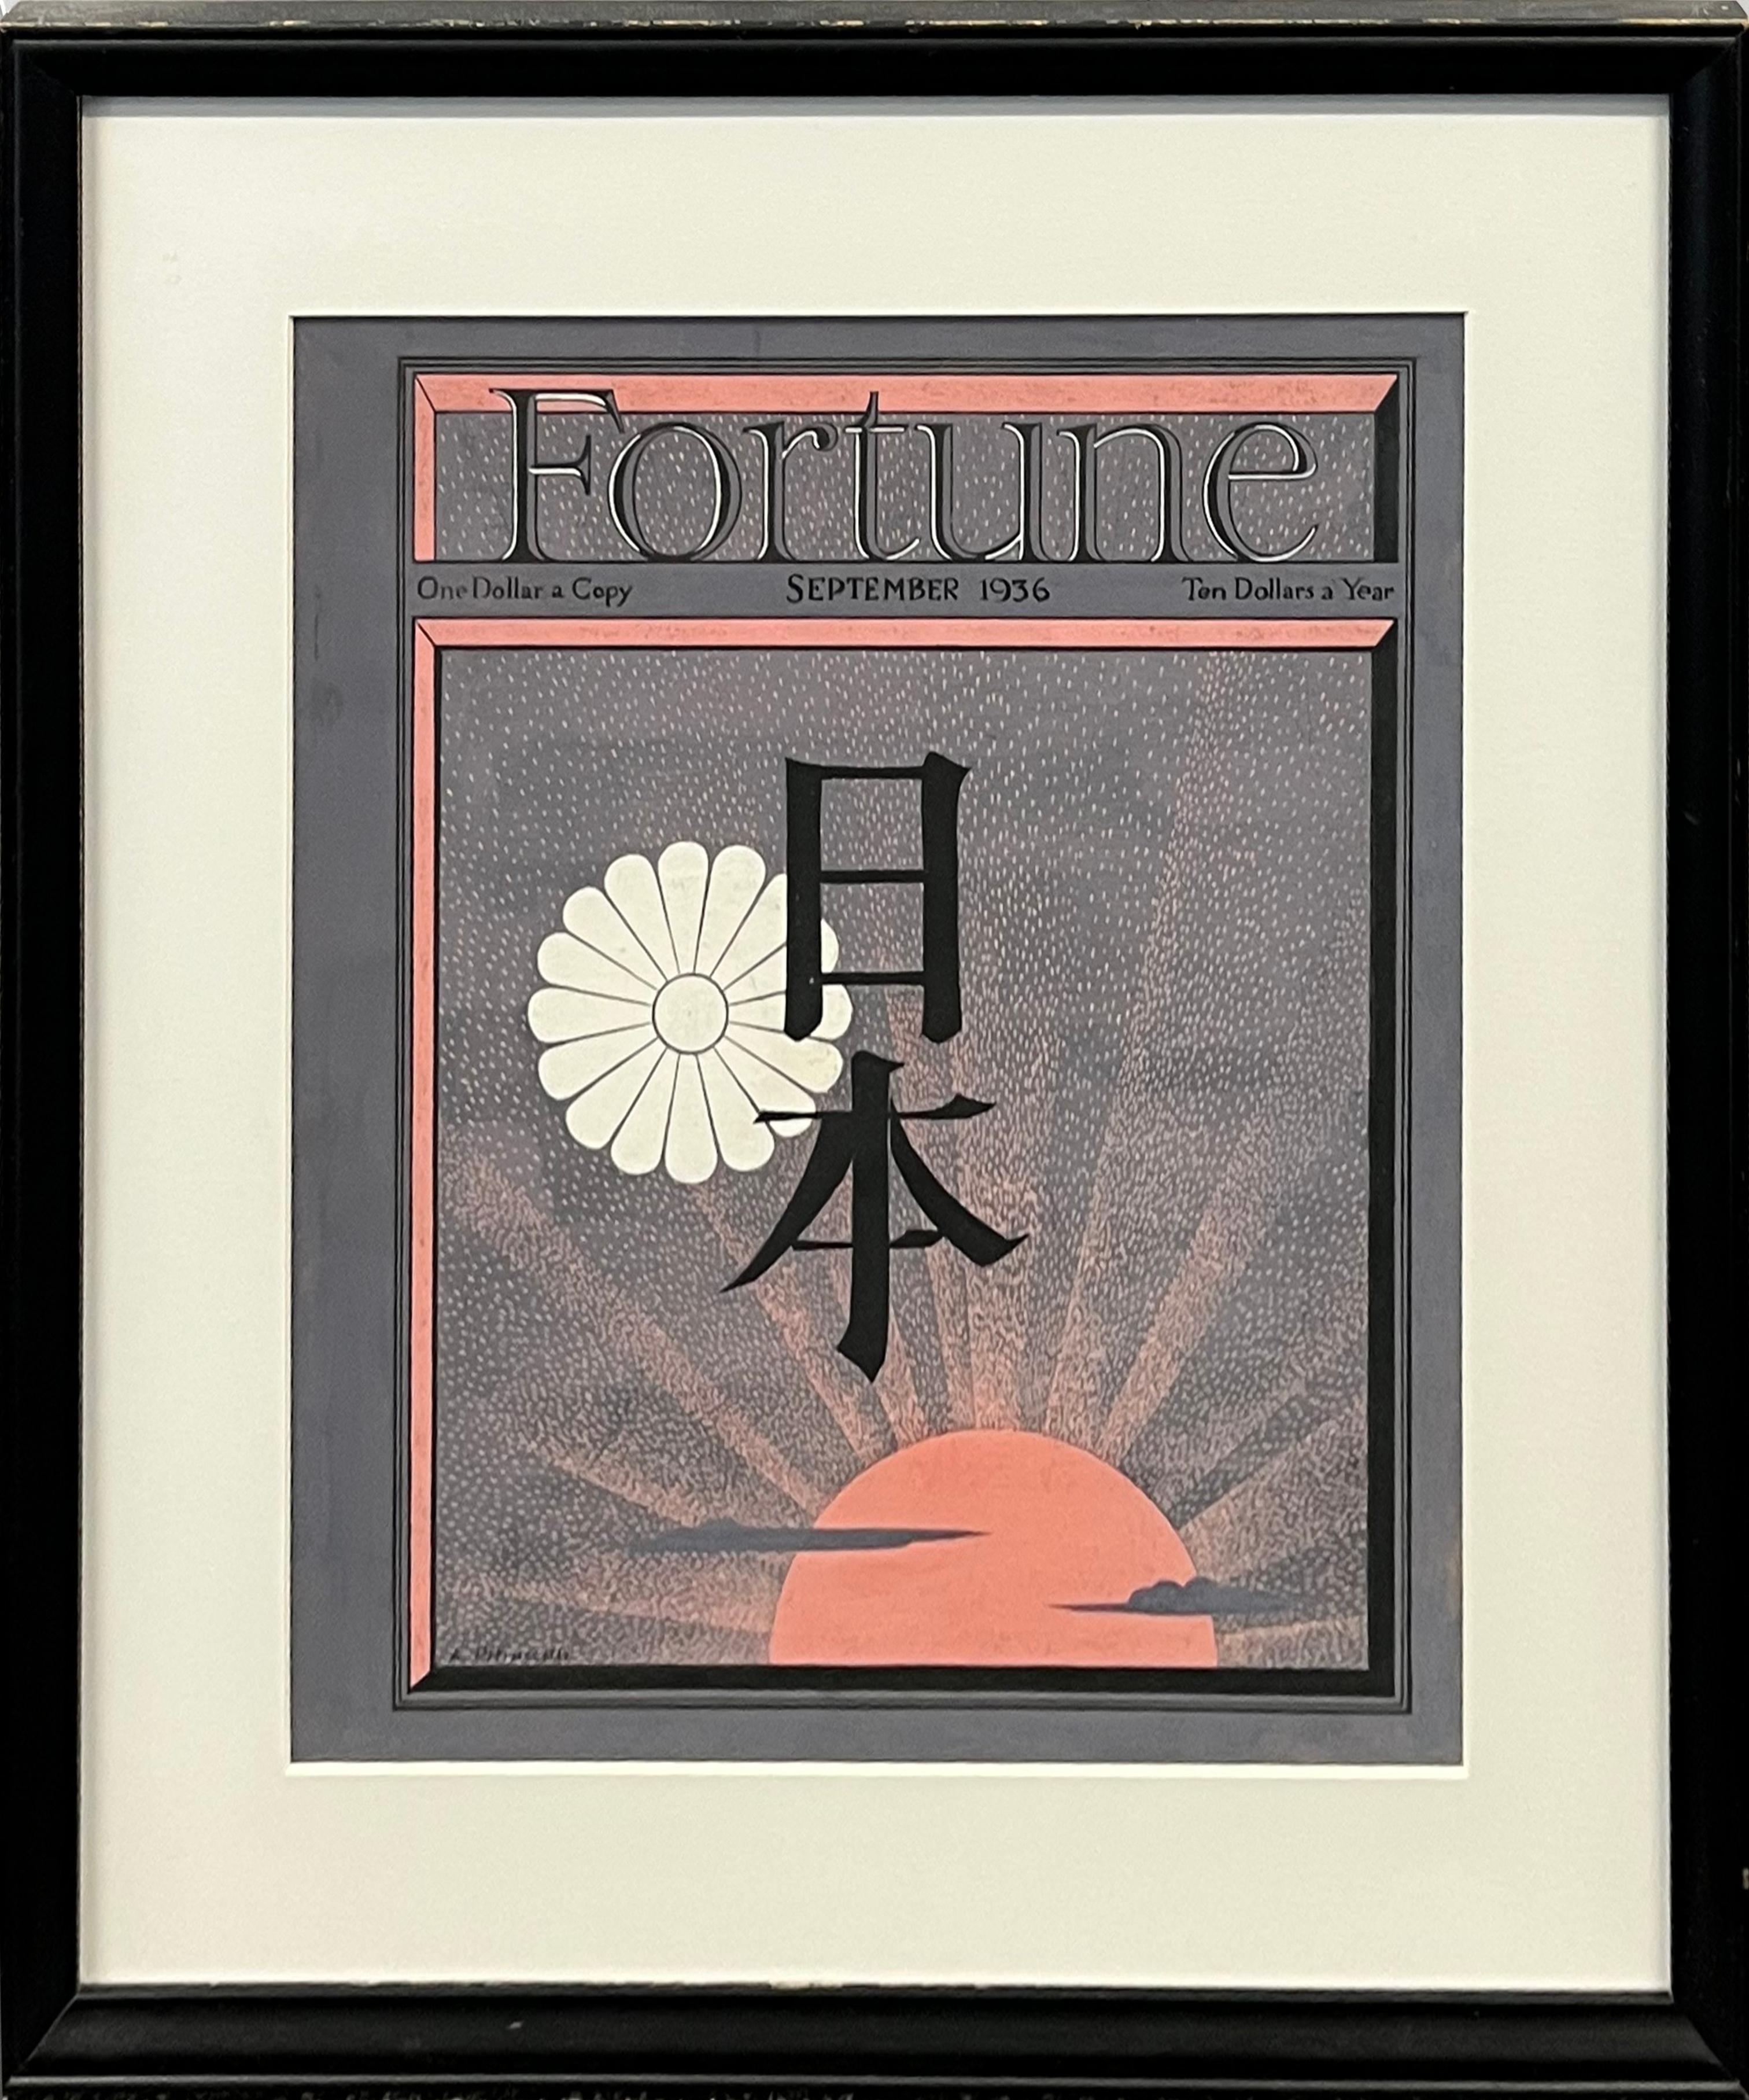 Japanische Zeitschrift Fortune Magazine-Cover, Proposal-Illustration, japanische Mid-Century-Zeit – Art von Antonio Petruccelli